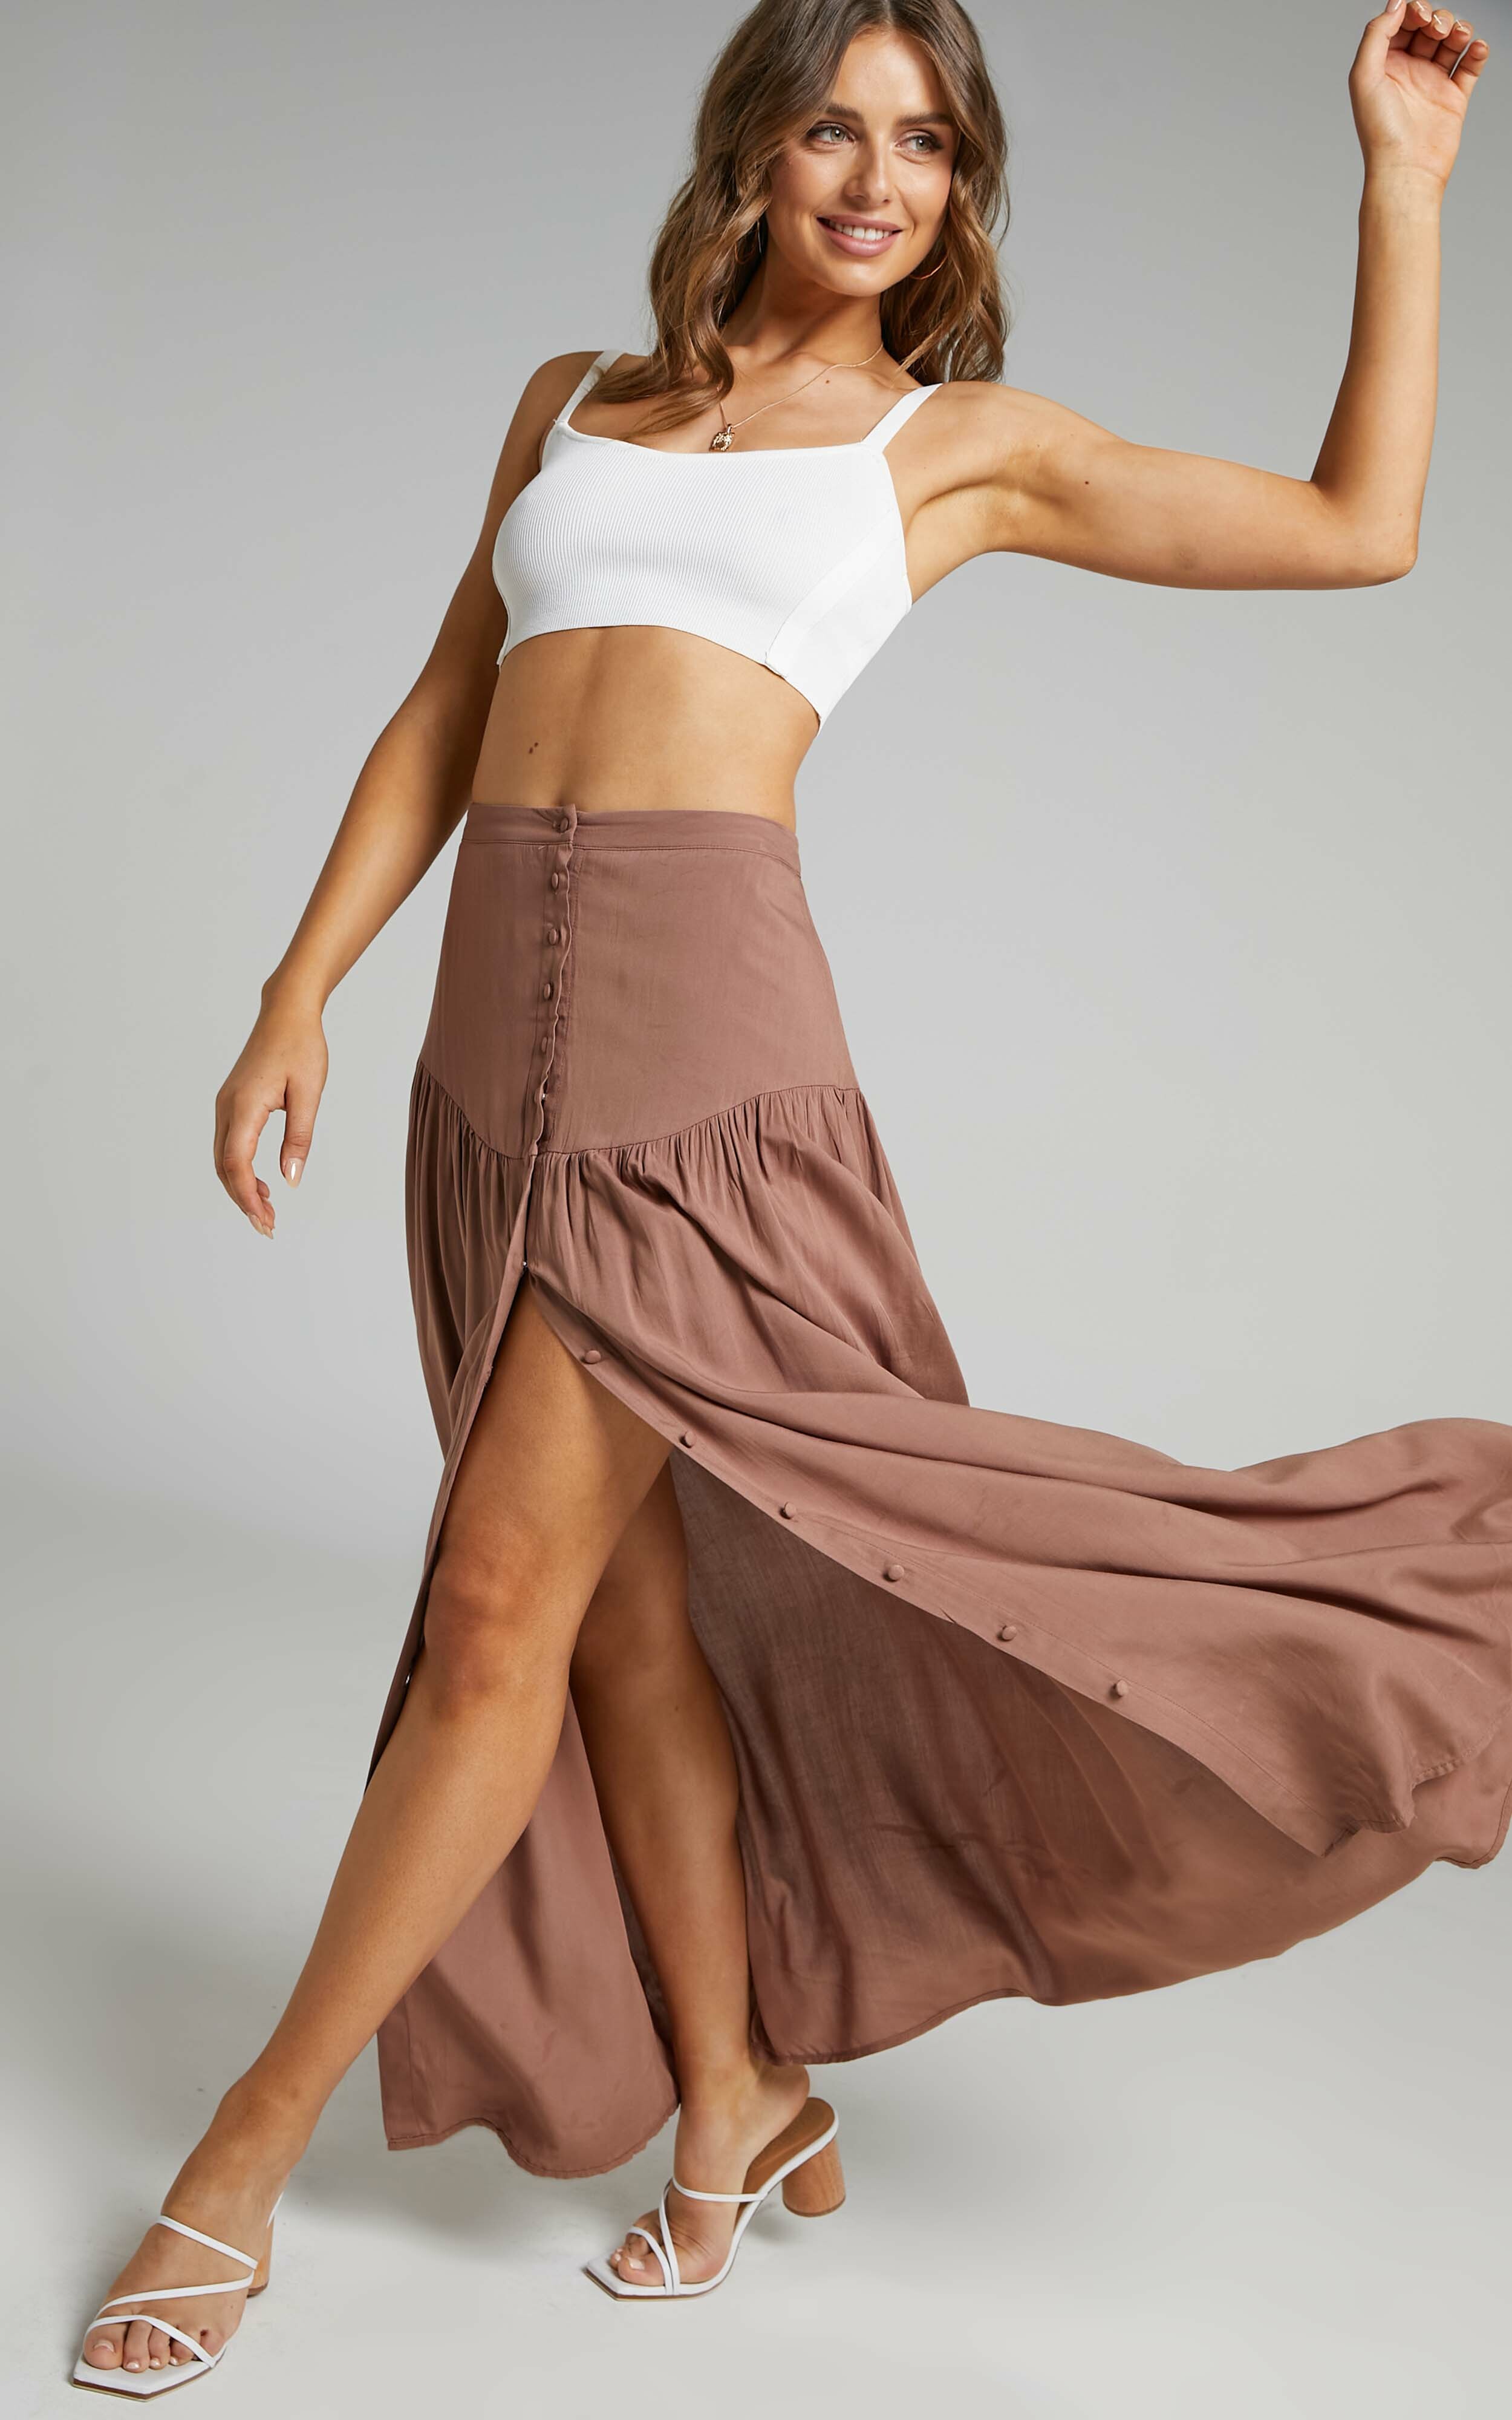 Knoxlee Skirt in Brown - 06, BRN1, hi-res image number null